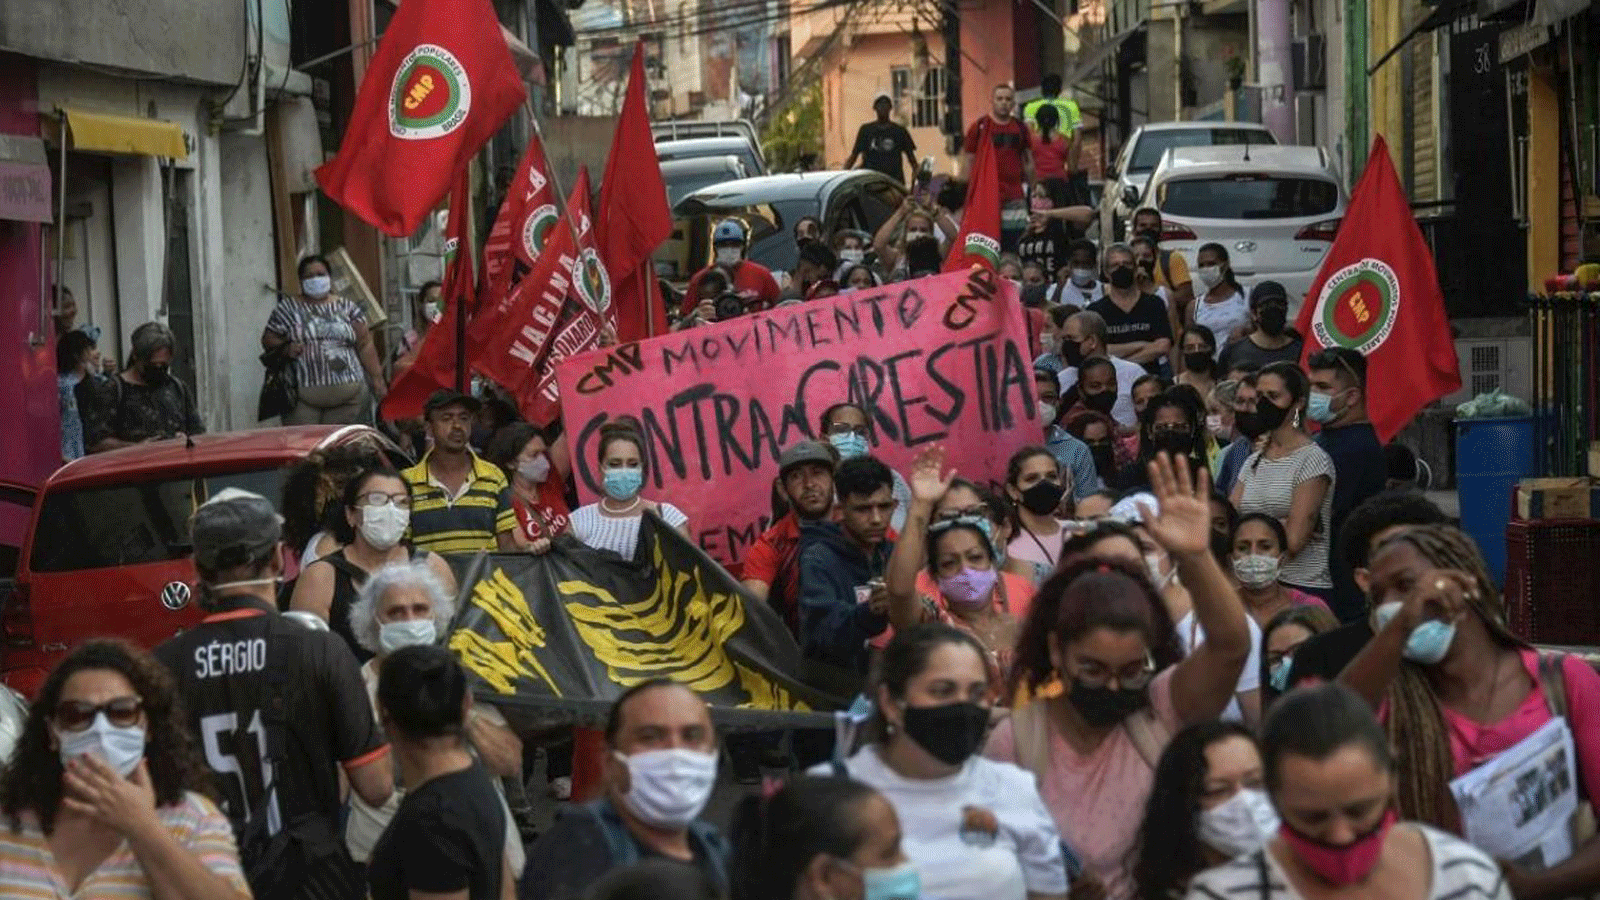 سكان ونشطاء من مركز الحركات الشعبية يحتجون على الجوع والبطالة في ساو باولو بالبرازيل.